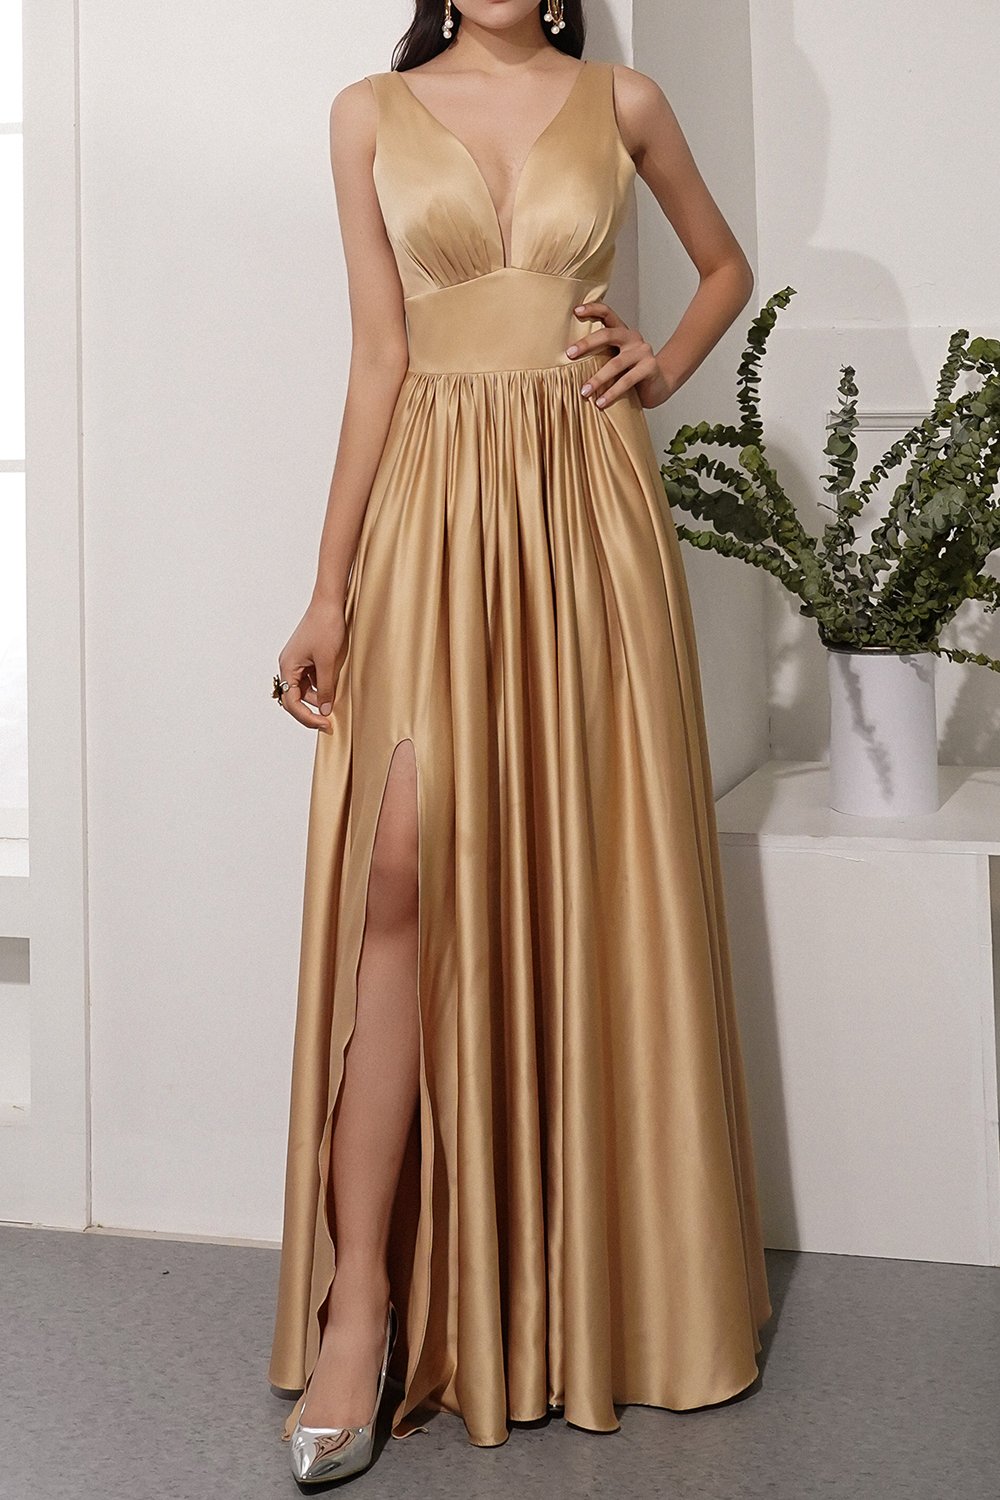 Golden Satin Long Dress